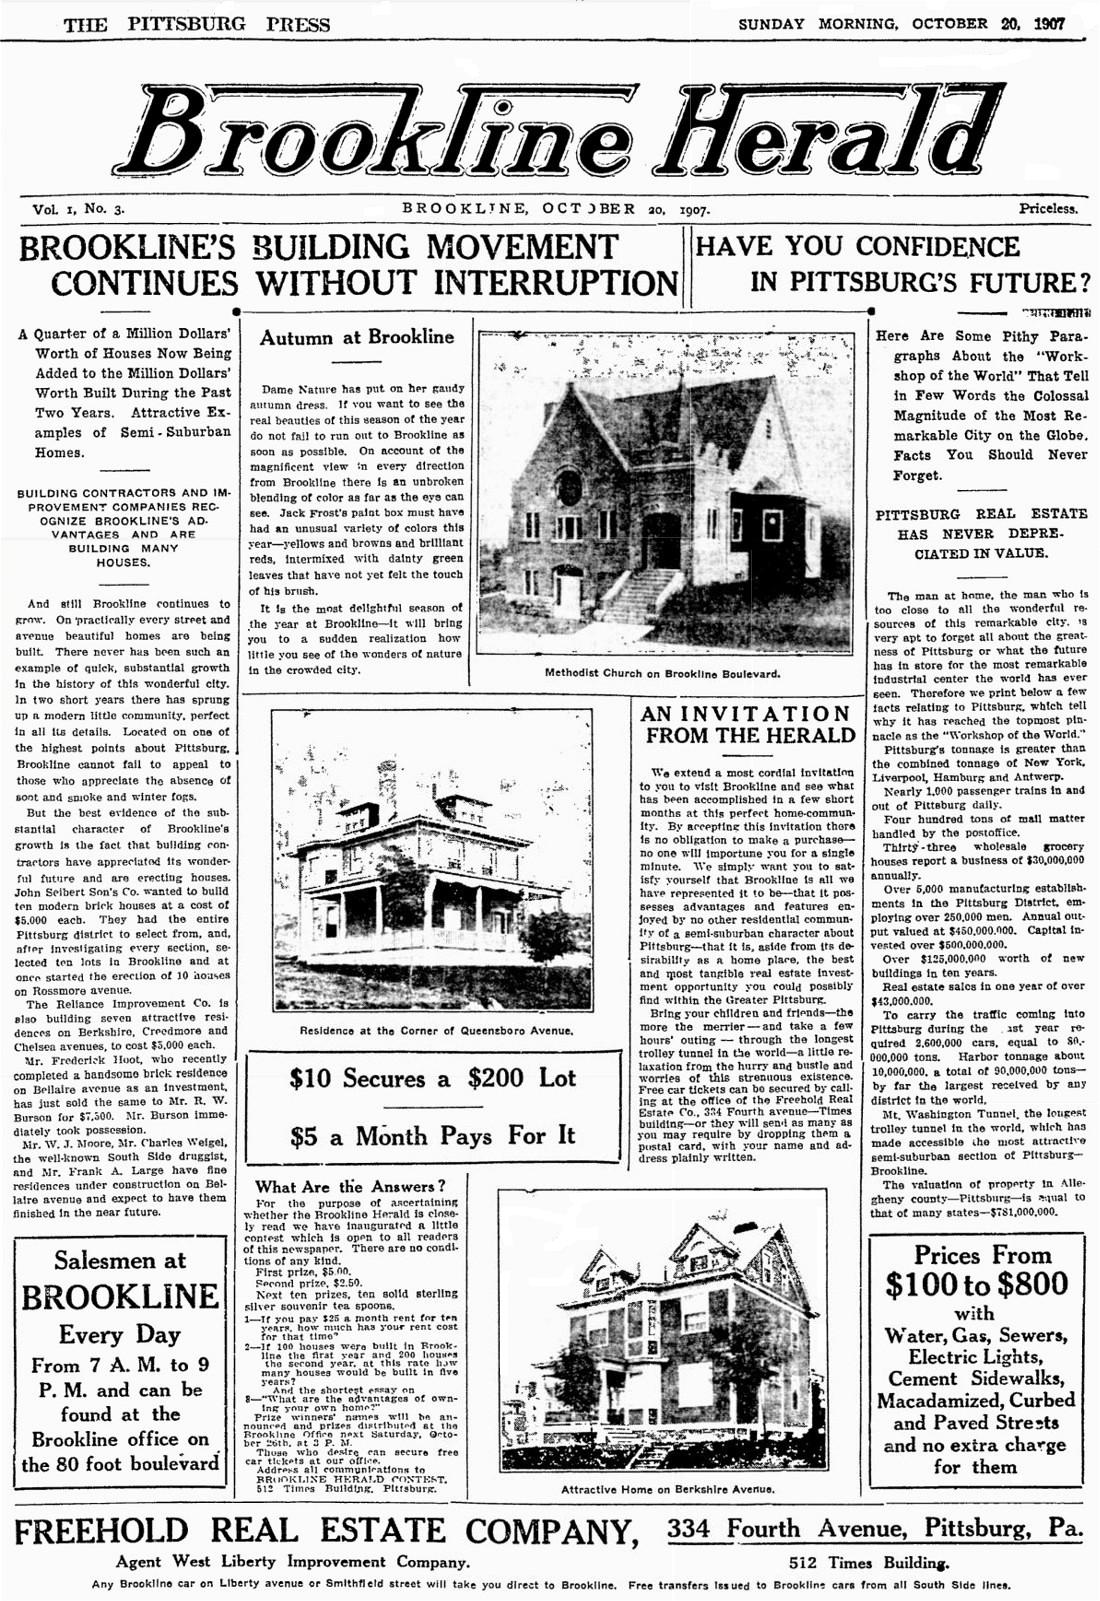 Brookline Herald - October 20, 1907